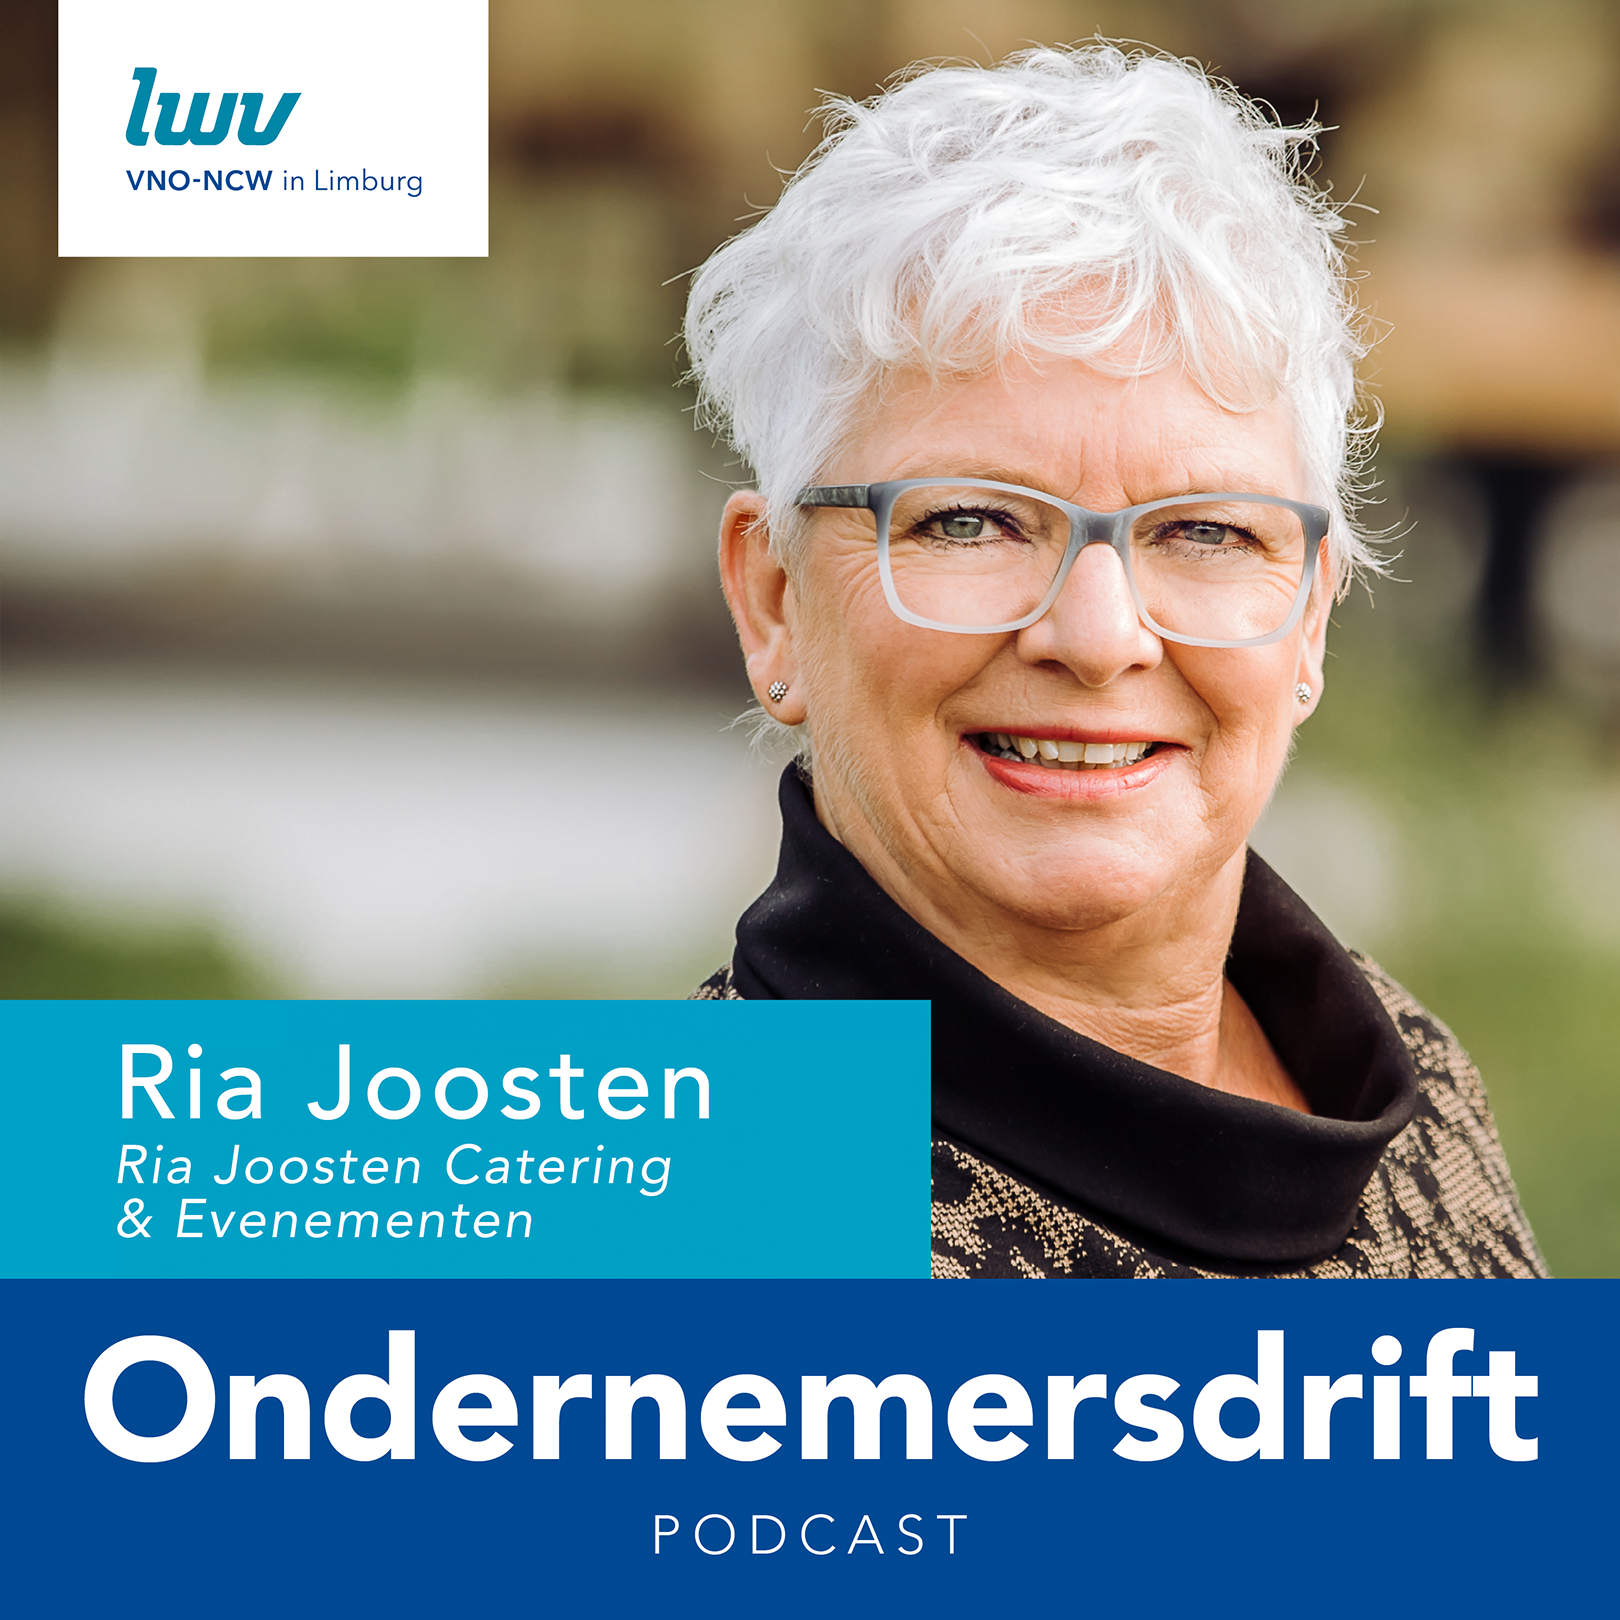 LWV-Podcast met Ria Joosten